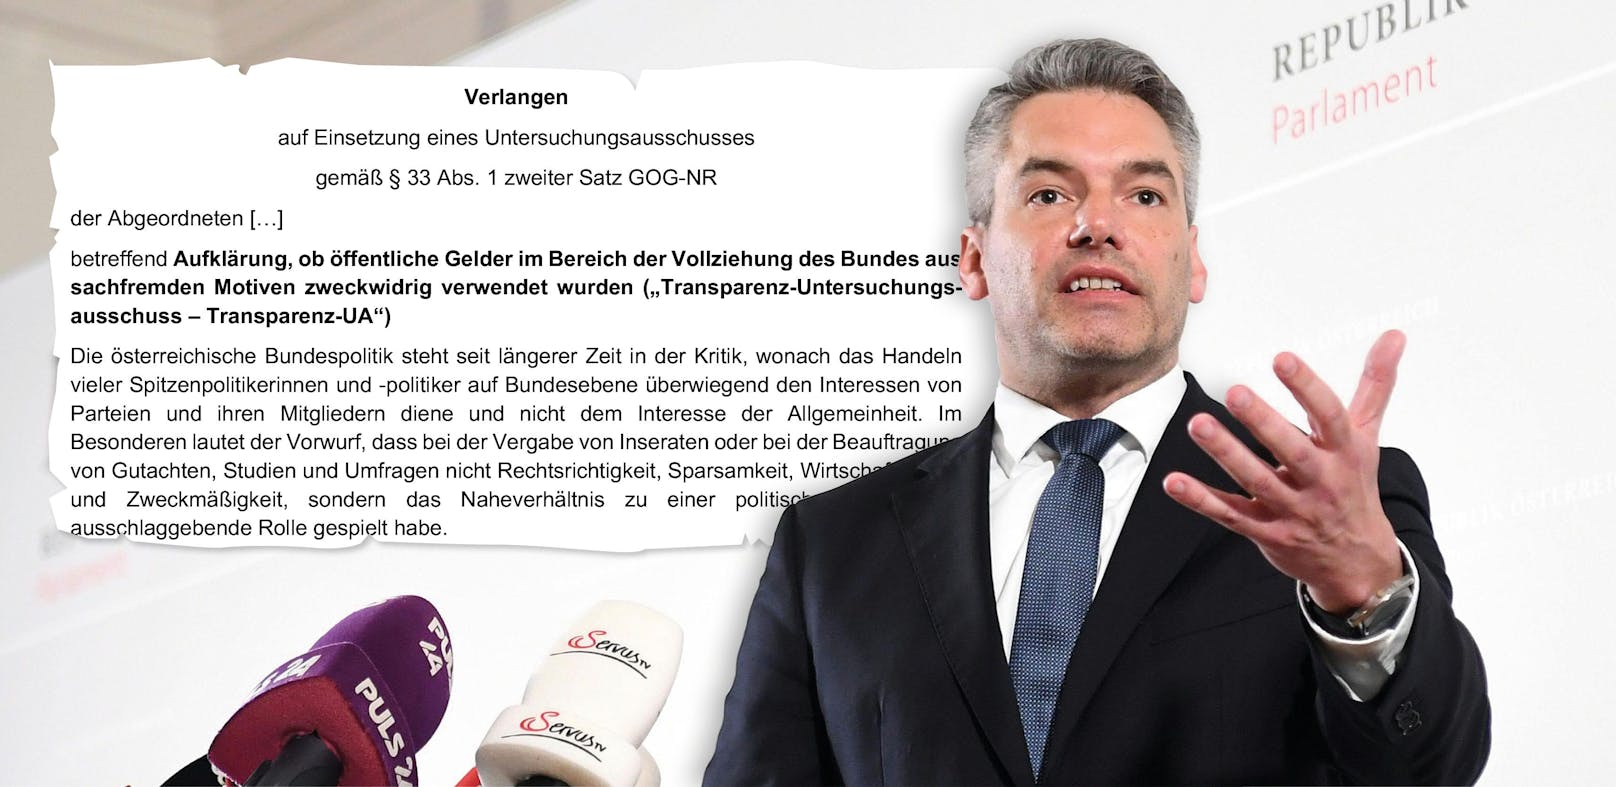 Dynamit für die Koaliton: Die ÖVP versendete am Freitag ein E-Mail via falschem Verteiler.